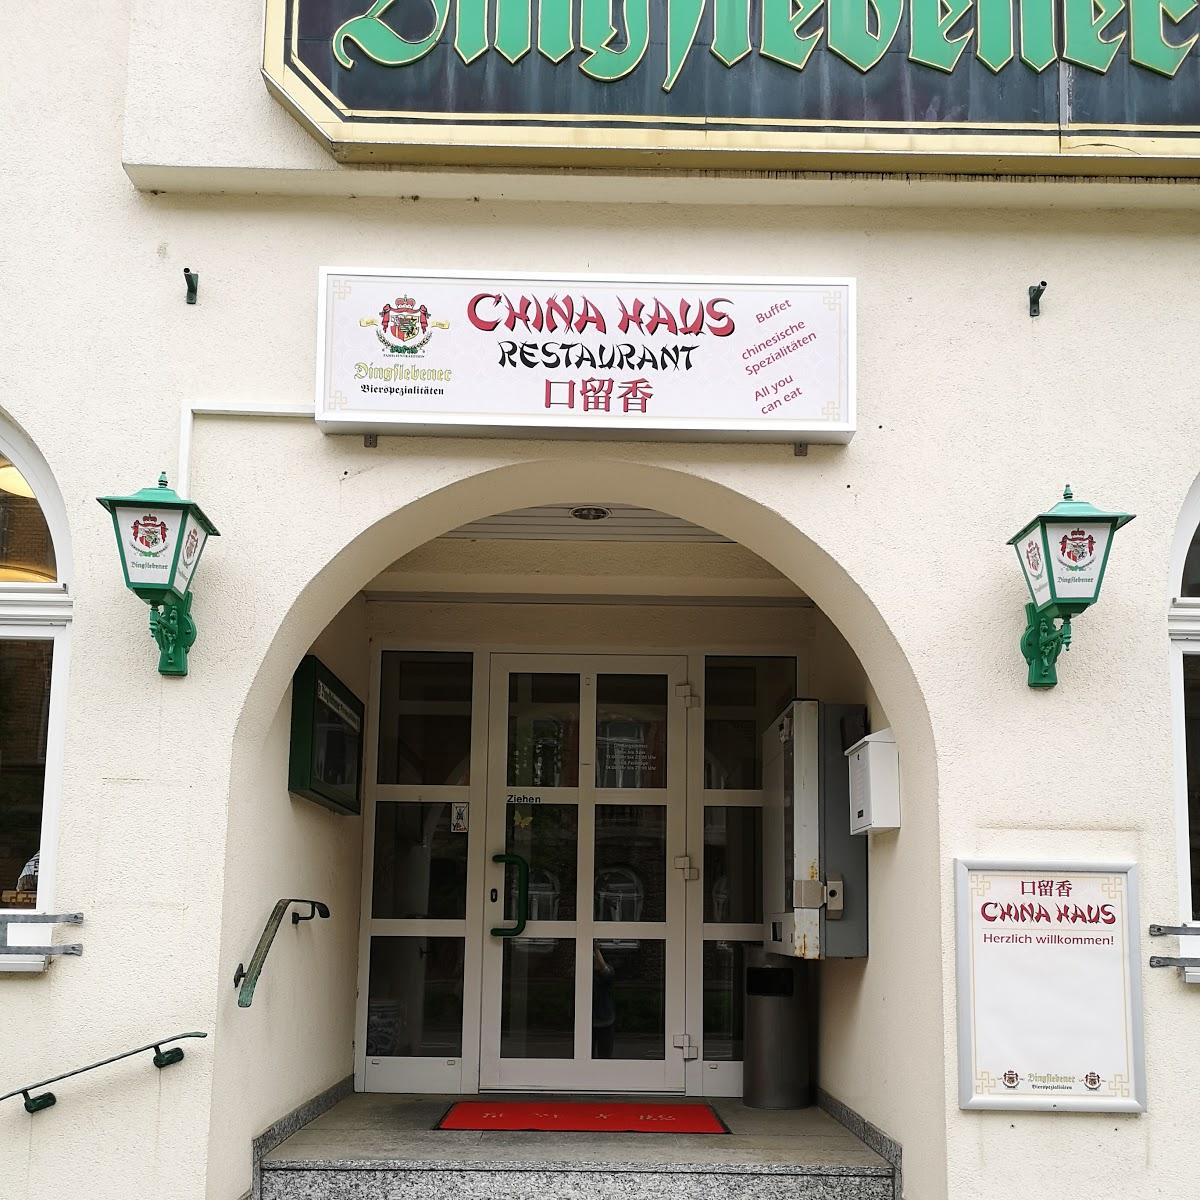 Restaurant "Zum kleinen Eisbär" in  Ilmenau